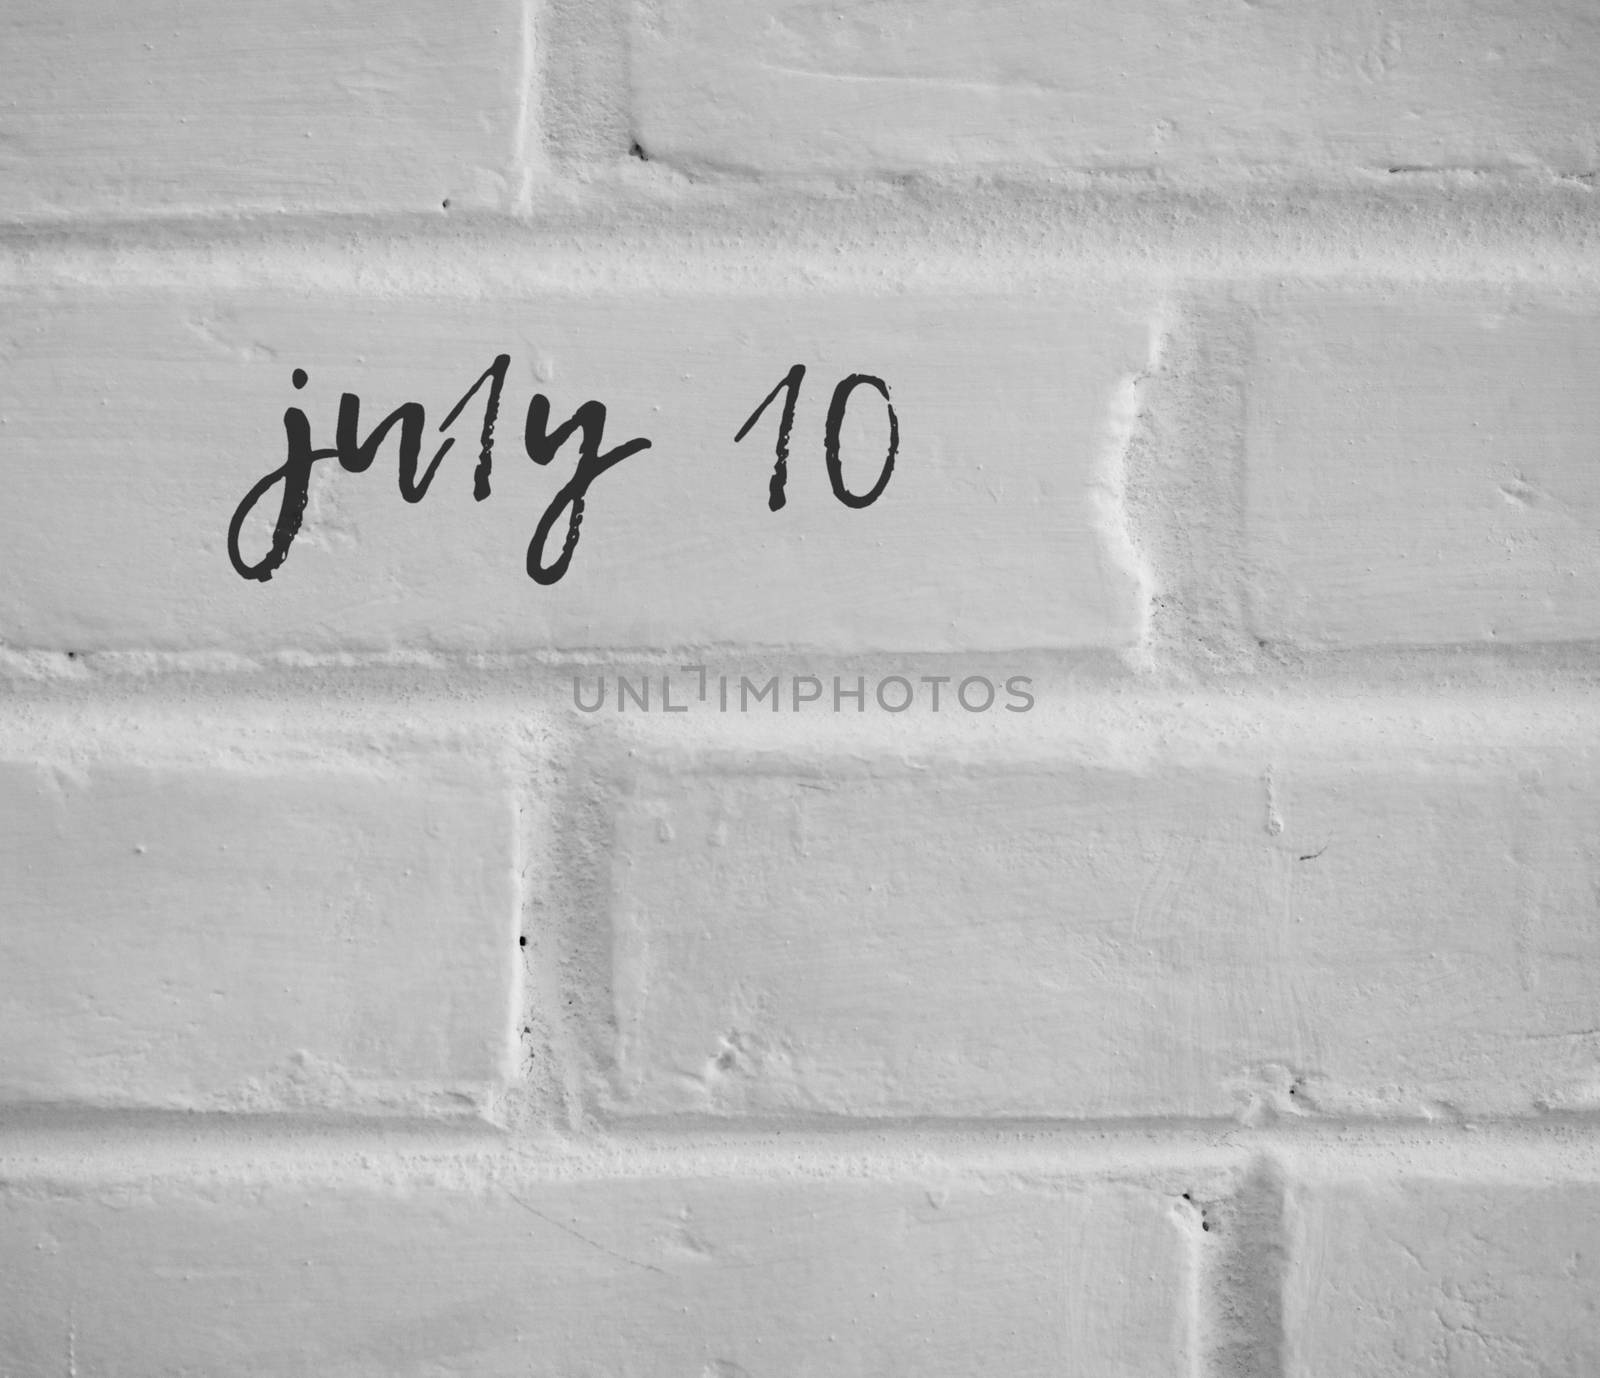 PHOTO OF july 10 WRITTEN ON WHITE PLAIN BRICK WALL